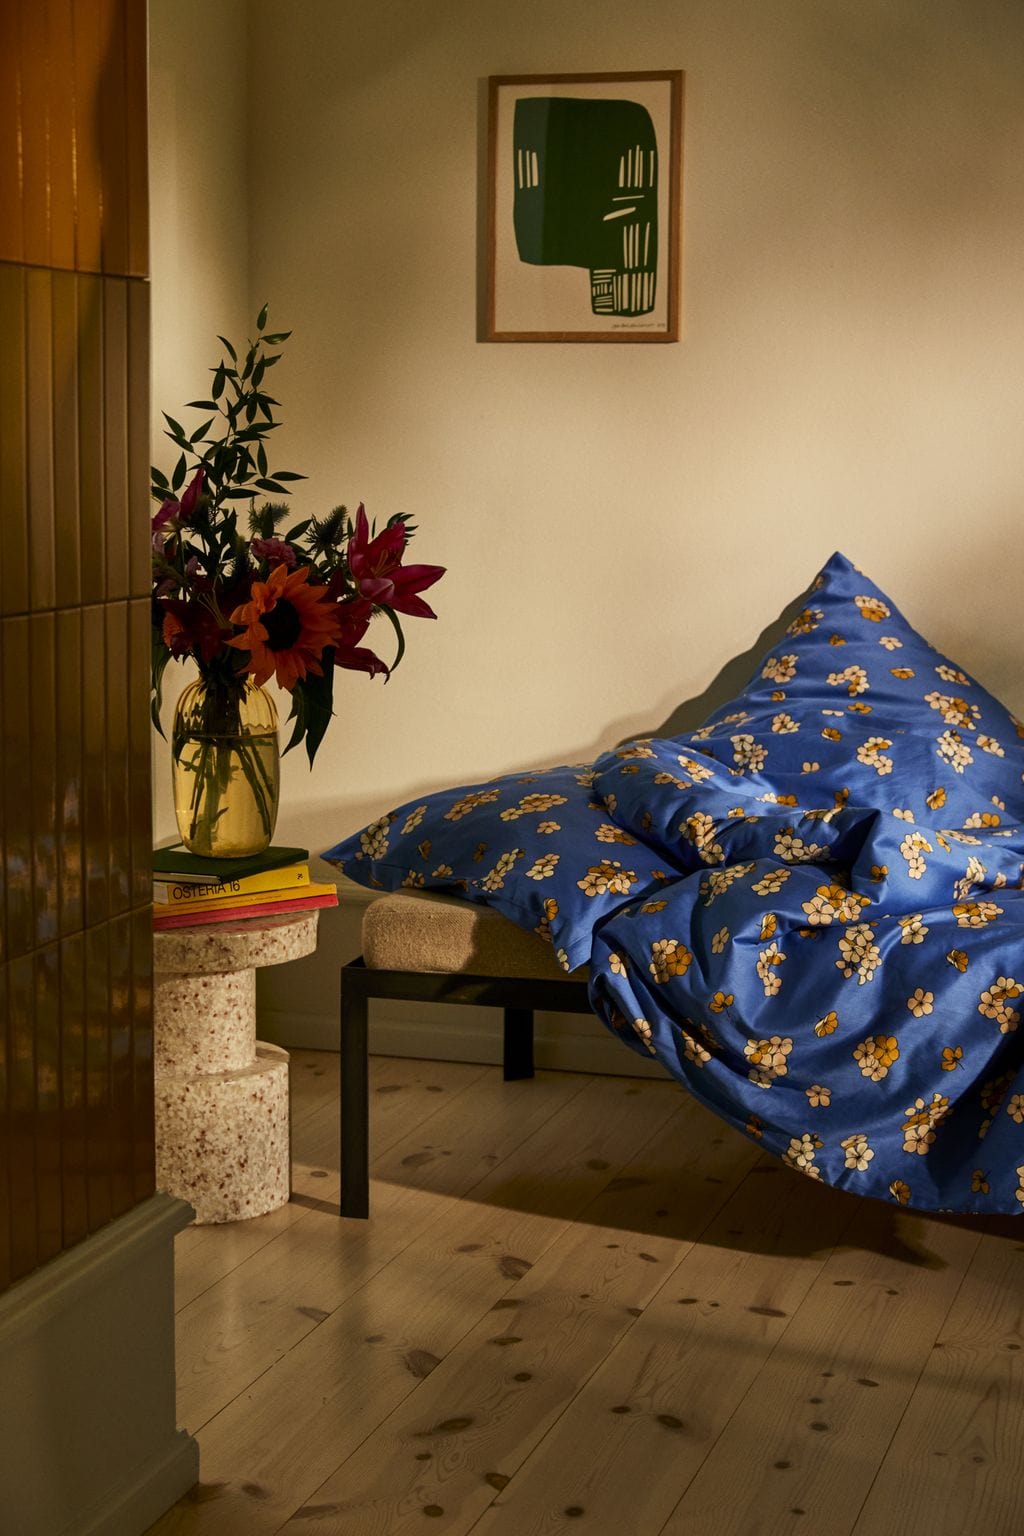 Juna Stora behagligt sängkläder 200 x220 cm, blå